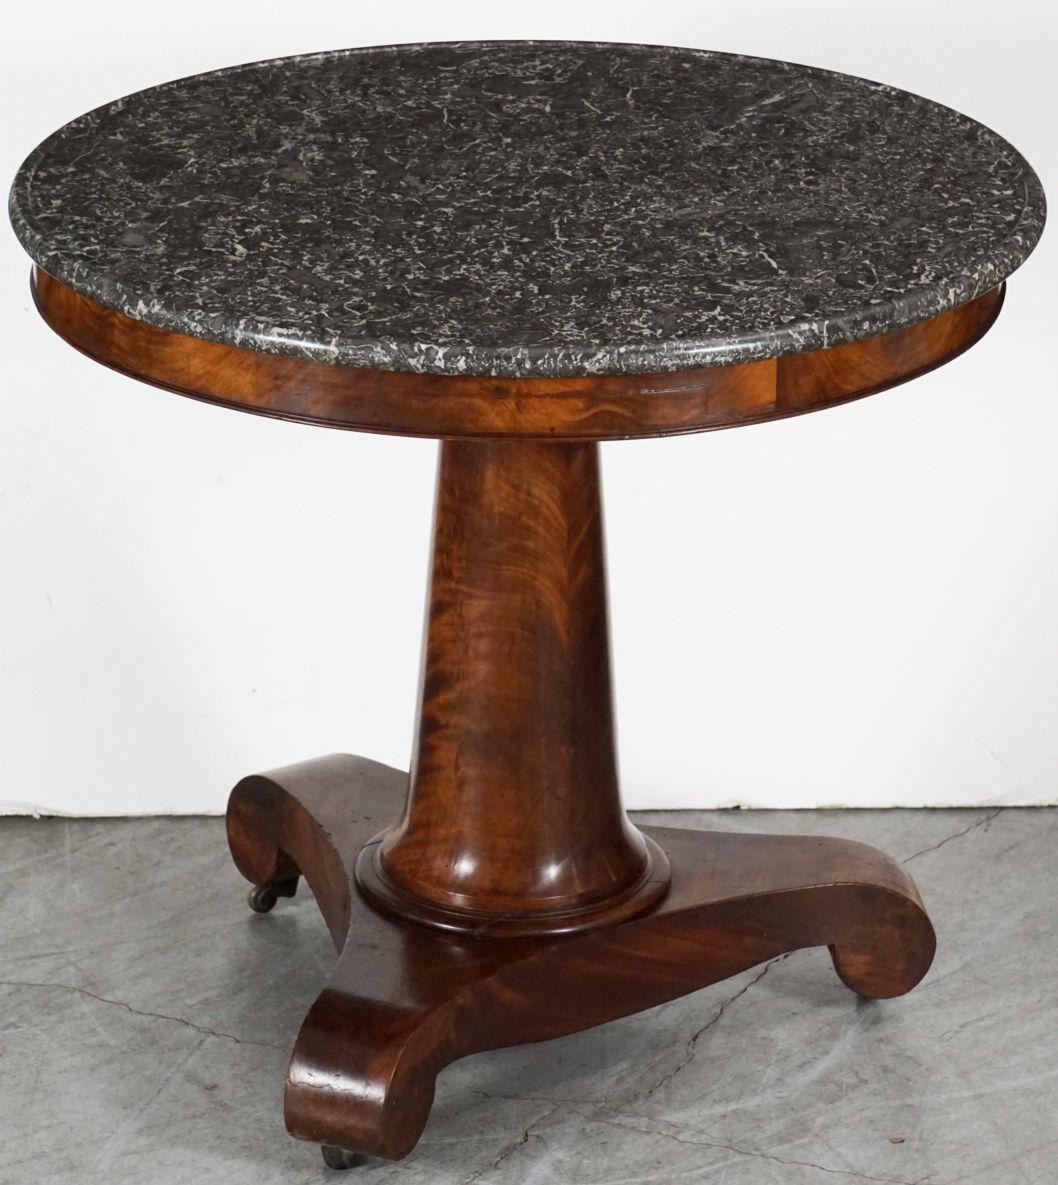 Ein feiner französischer Guéridon oder runder Tisch aus dem 19. Jahrhundert - eine schön gemaserte Mahagonisäule, die die runde, gemaserte Marmorplatte trägt, die auf einem patinierten dreiförmigen Sockel mit Beinen in Schneckenform steht und auf